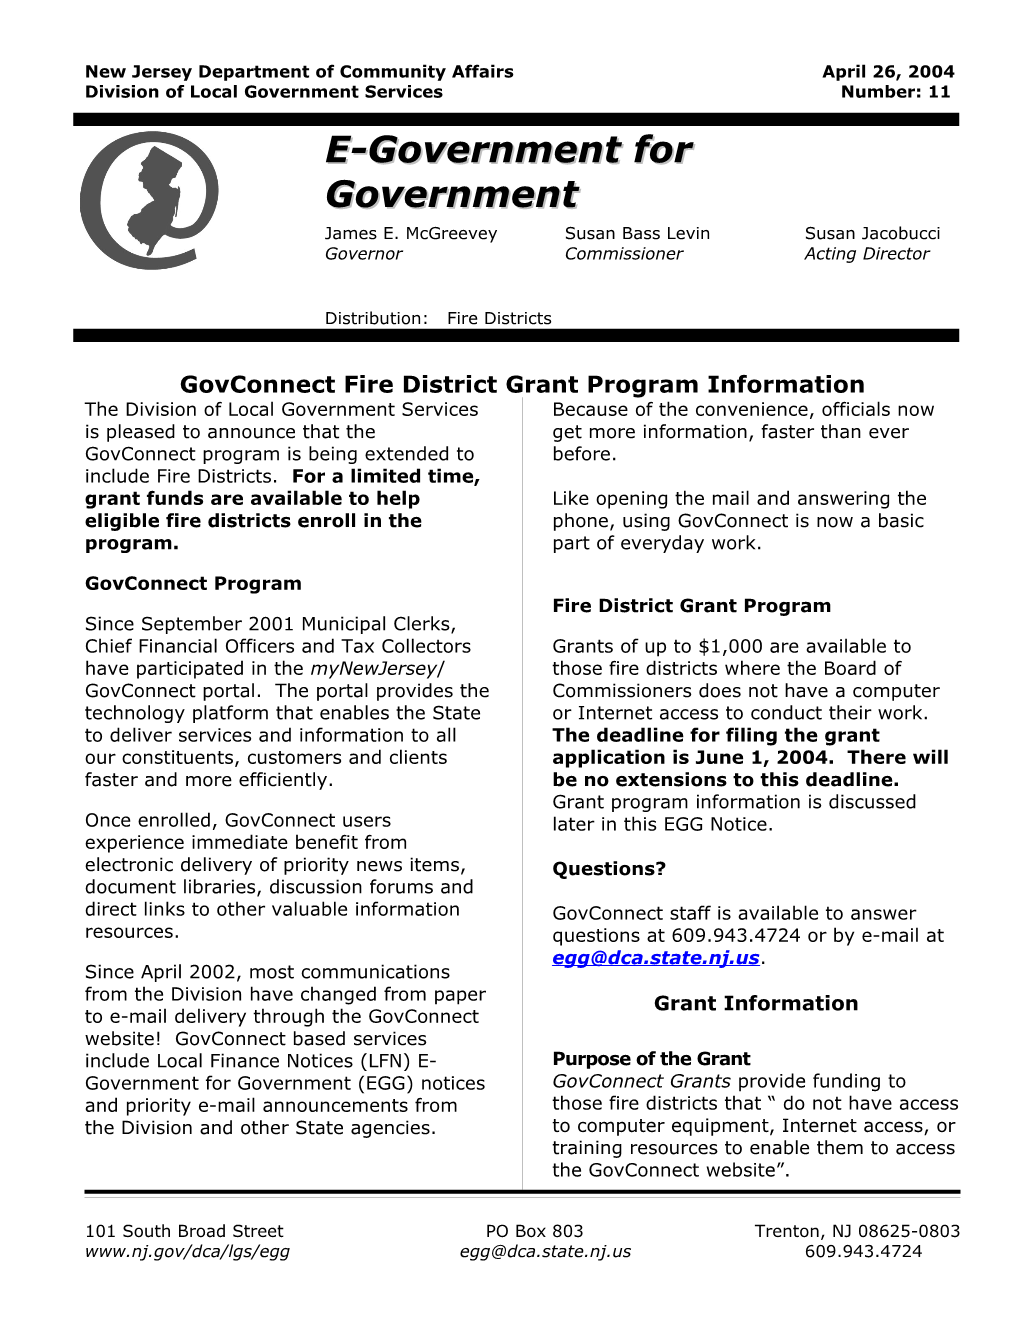 Govconnect Grant Program Information